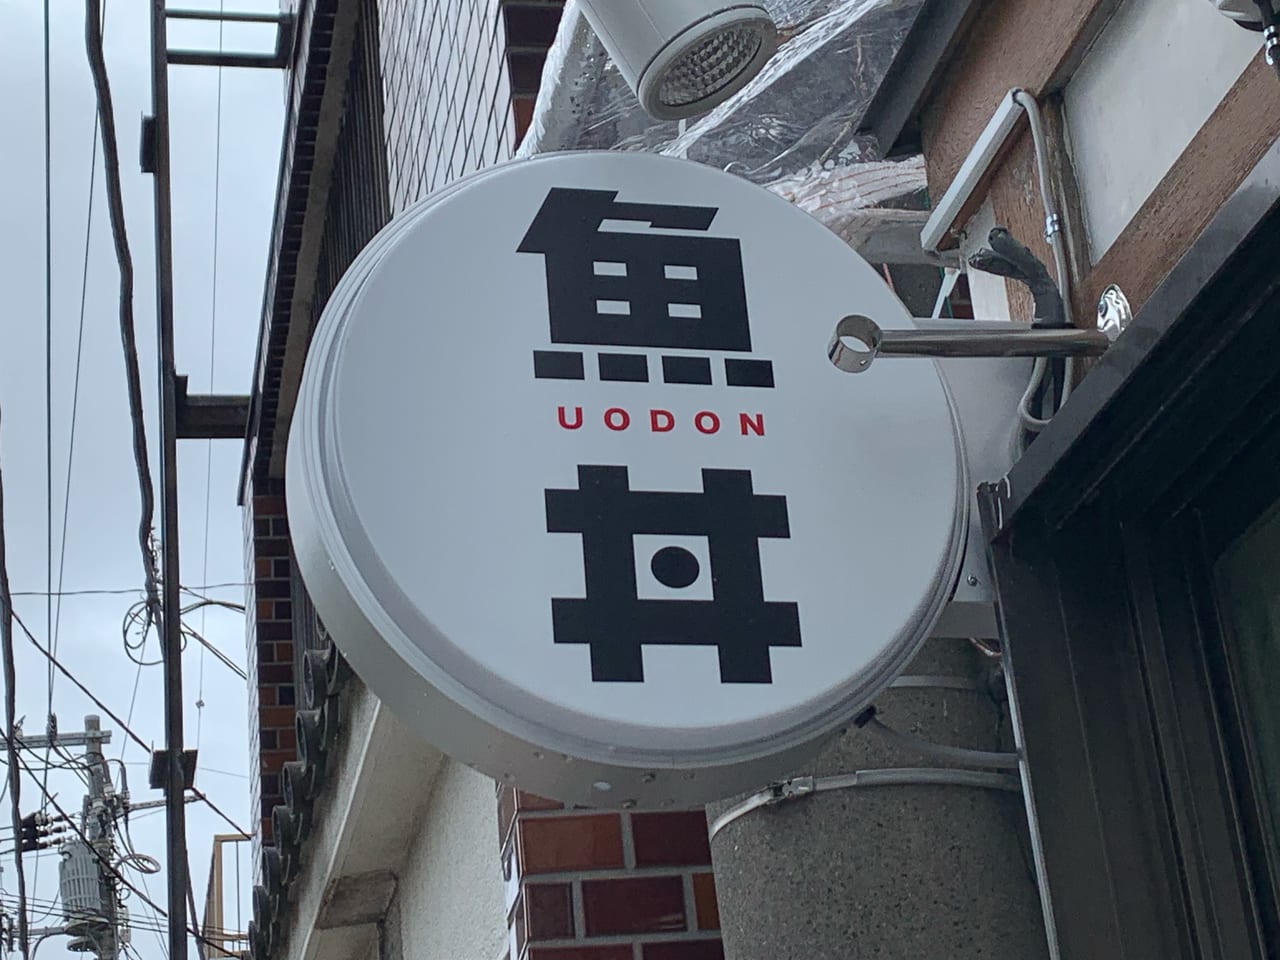 魚丼　谷塚店